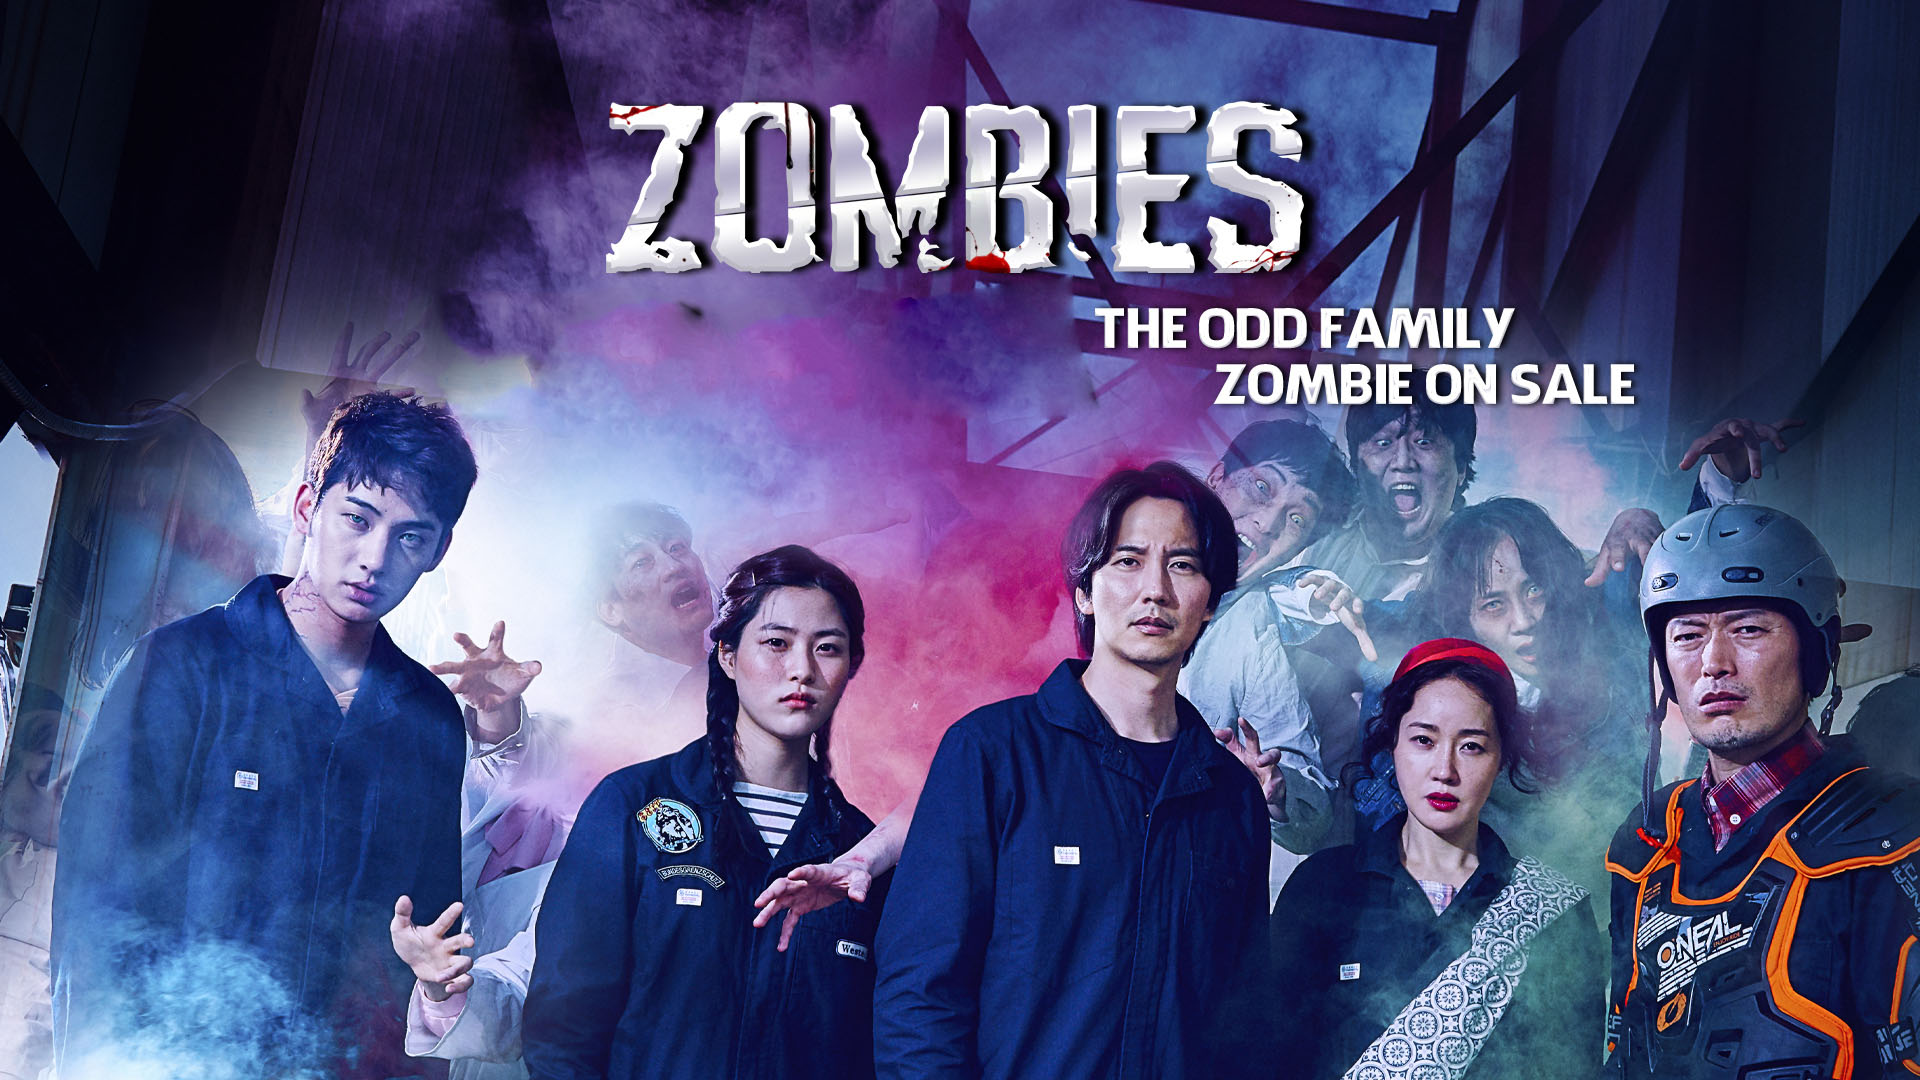 ดูหนังเกาหลี The Odd Family Zombie On Sale (2019) ครอบครัวสุดเพี้ยน เกรียนสู้ซอมบี้ ซับไทย